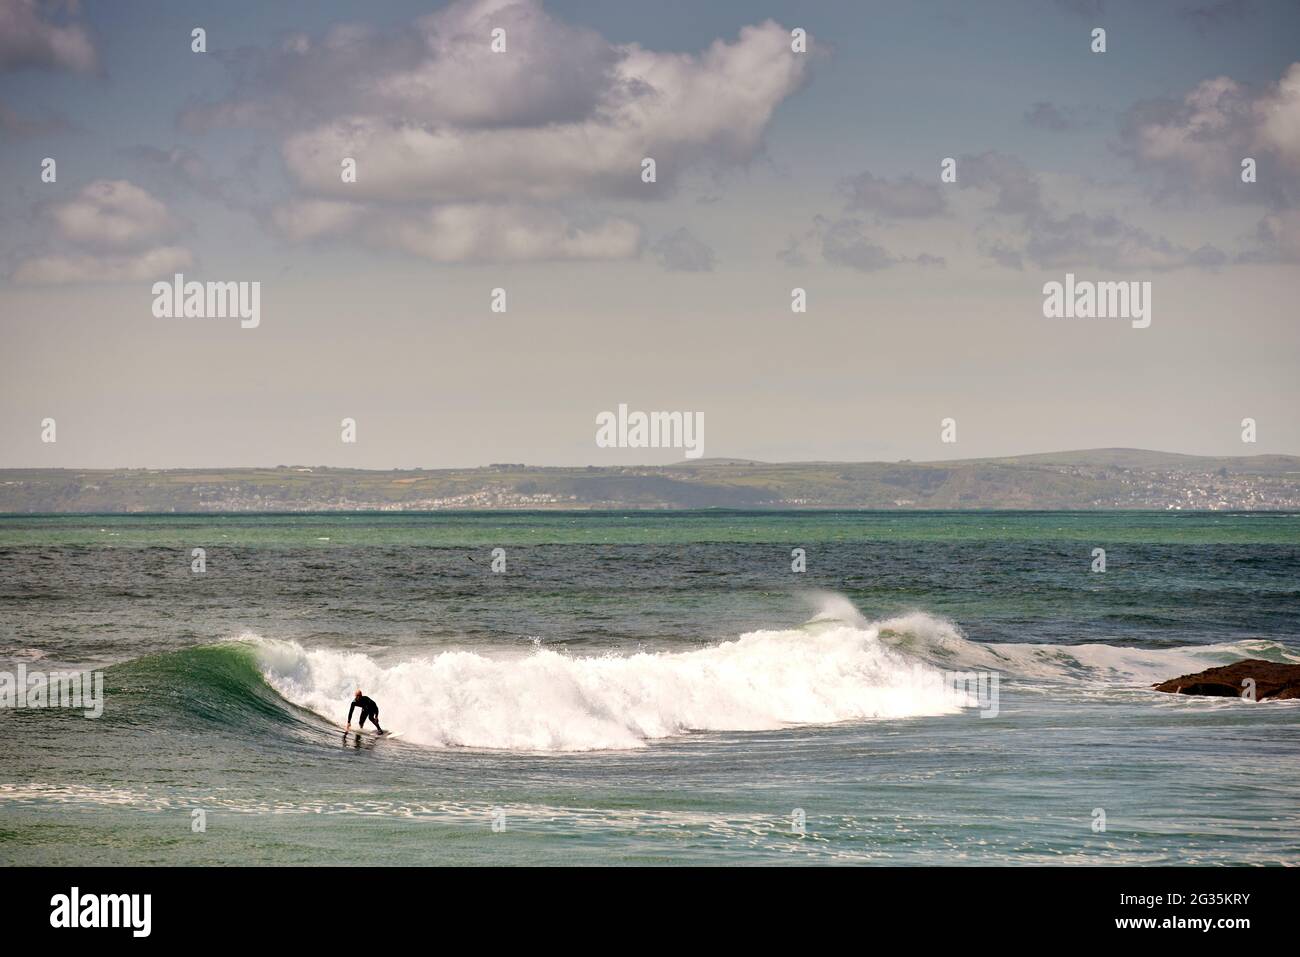 Das kornische Touristenziel Porthleven, Cornwall, England, stellte Surfer an der Küste vor, die Wellen reiten Stockfoto